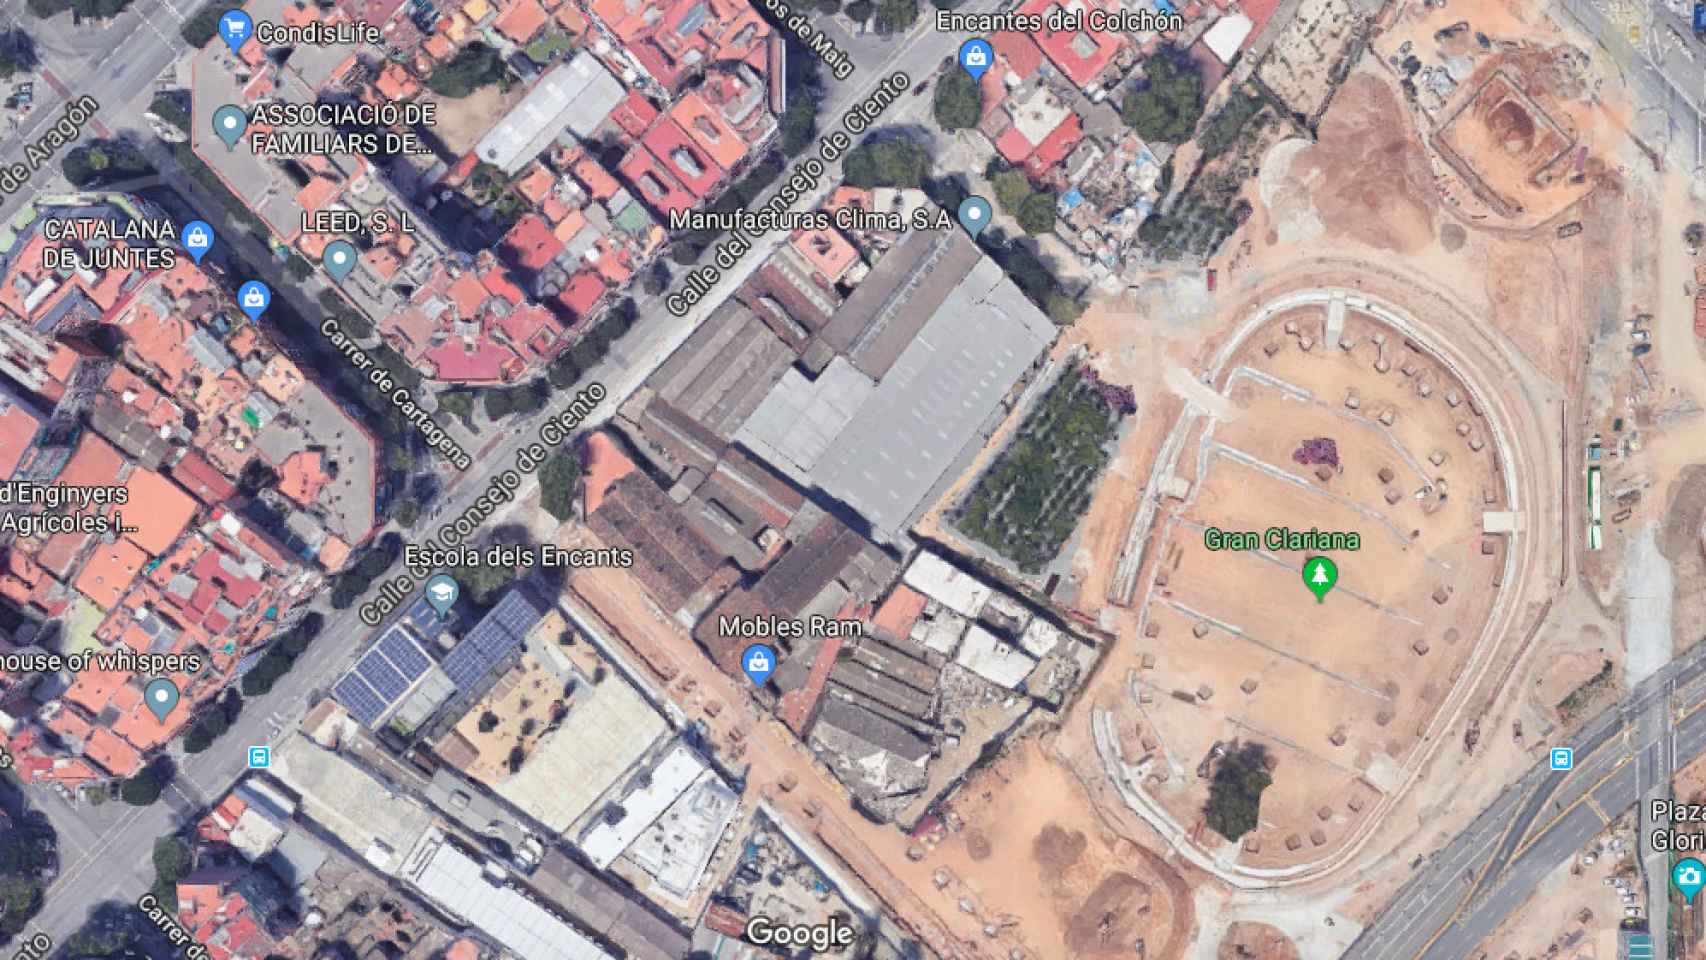 Amianto en el barrio de Sagrada Familia, cerca de las escuelas / Google Maps